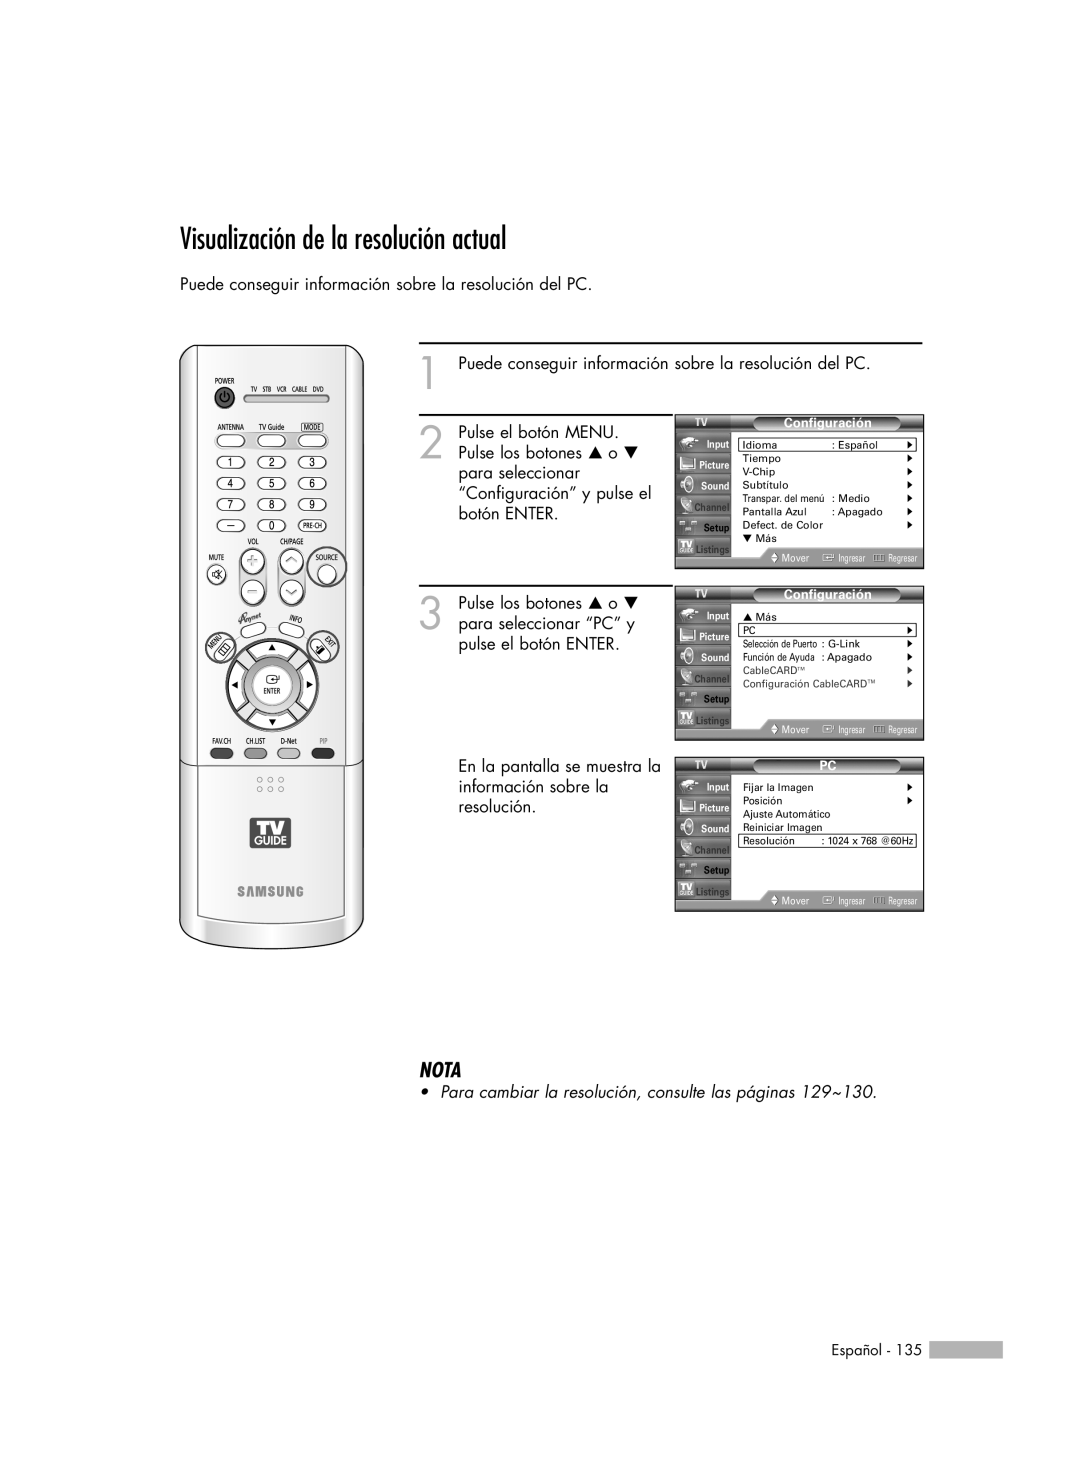 Samsung HL-R7178W, HL-R6178W, HL-R5078W, HL-R5678W manual Visualización de la resolución actual, Nota 